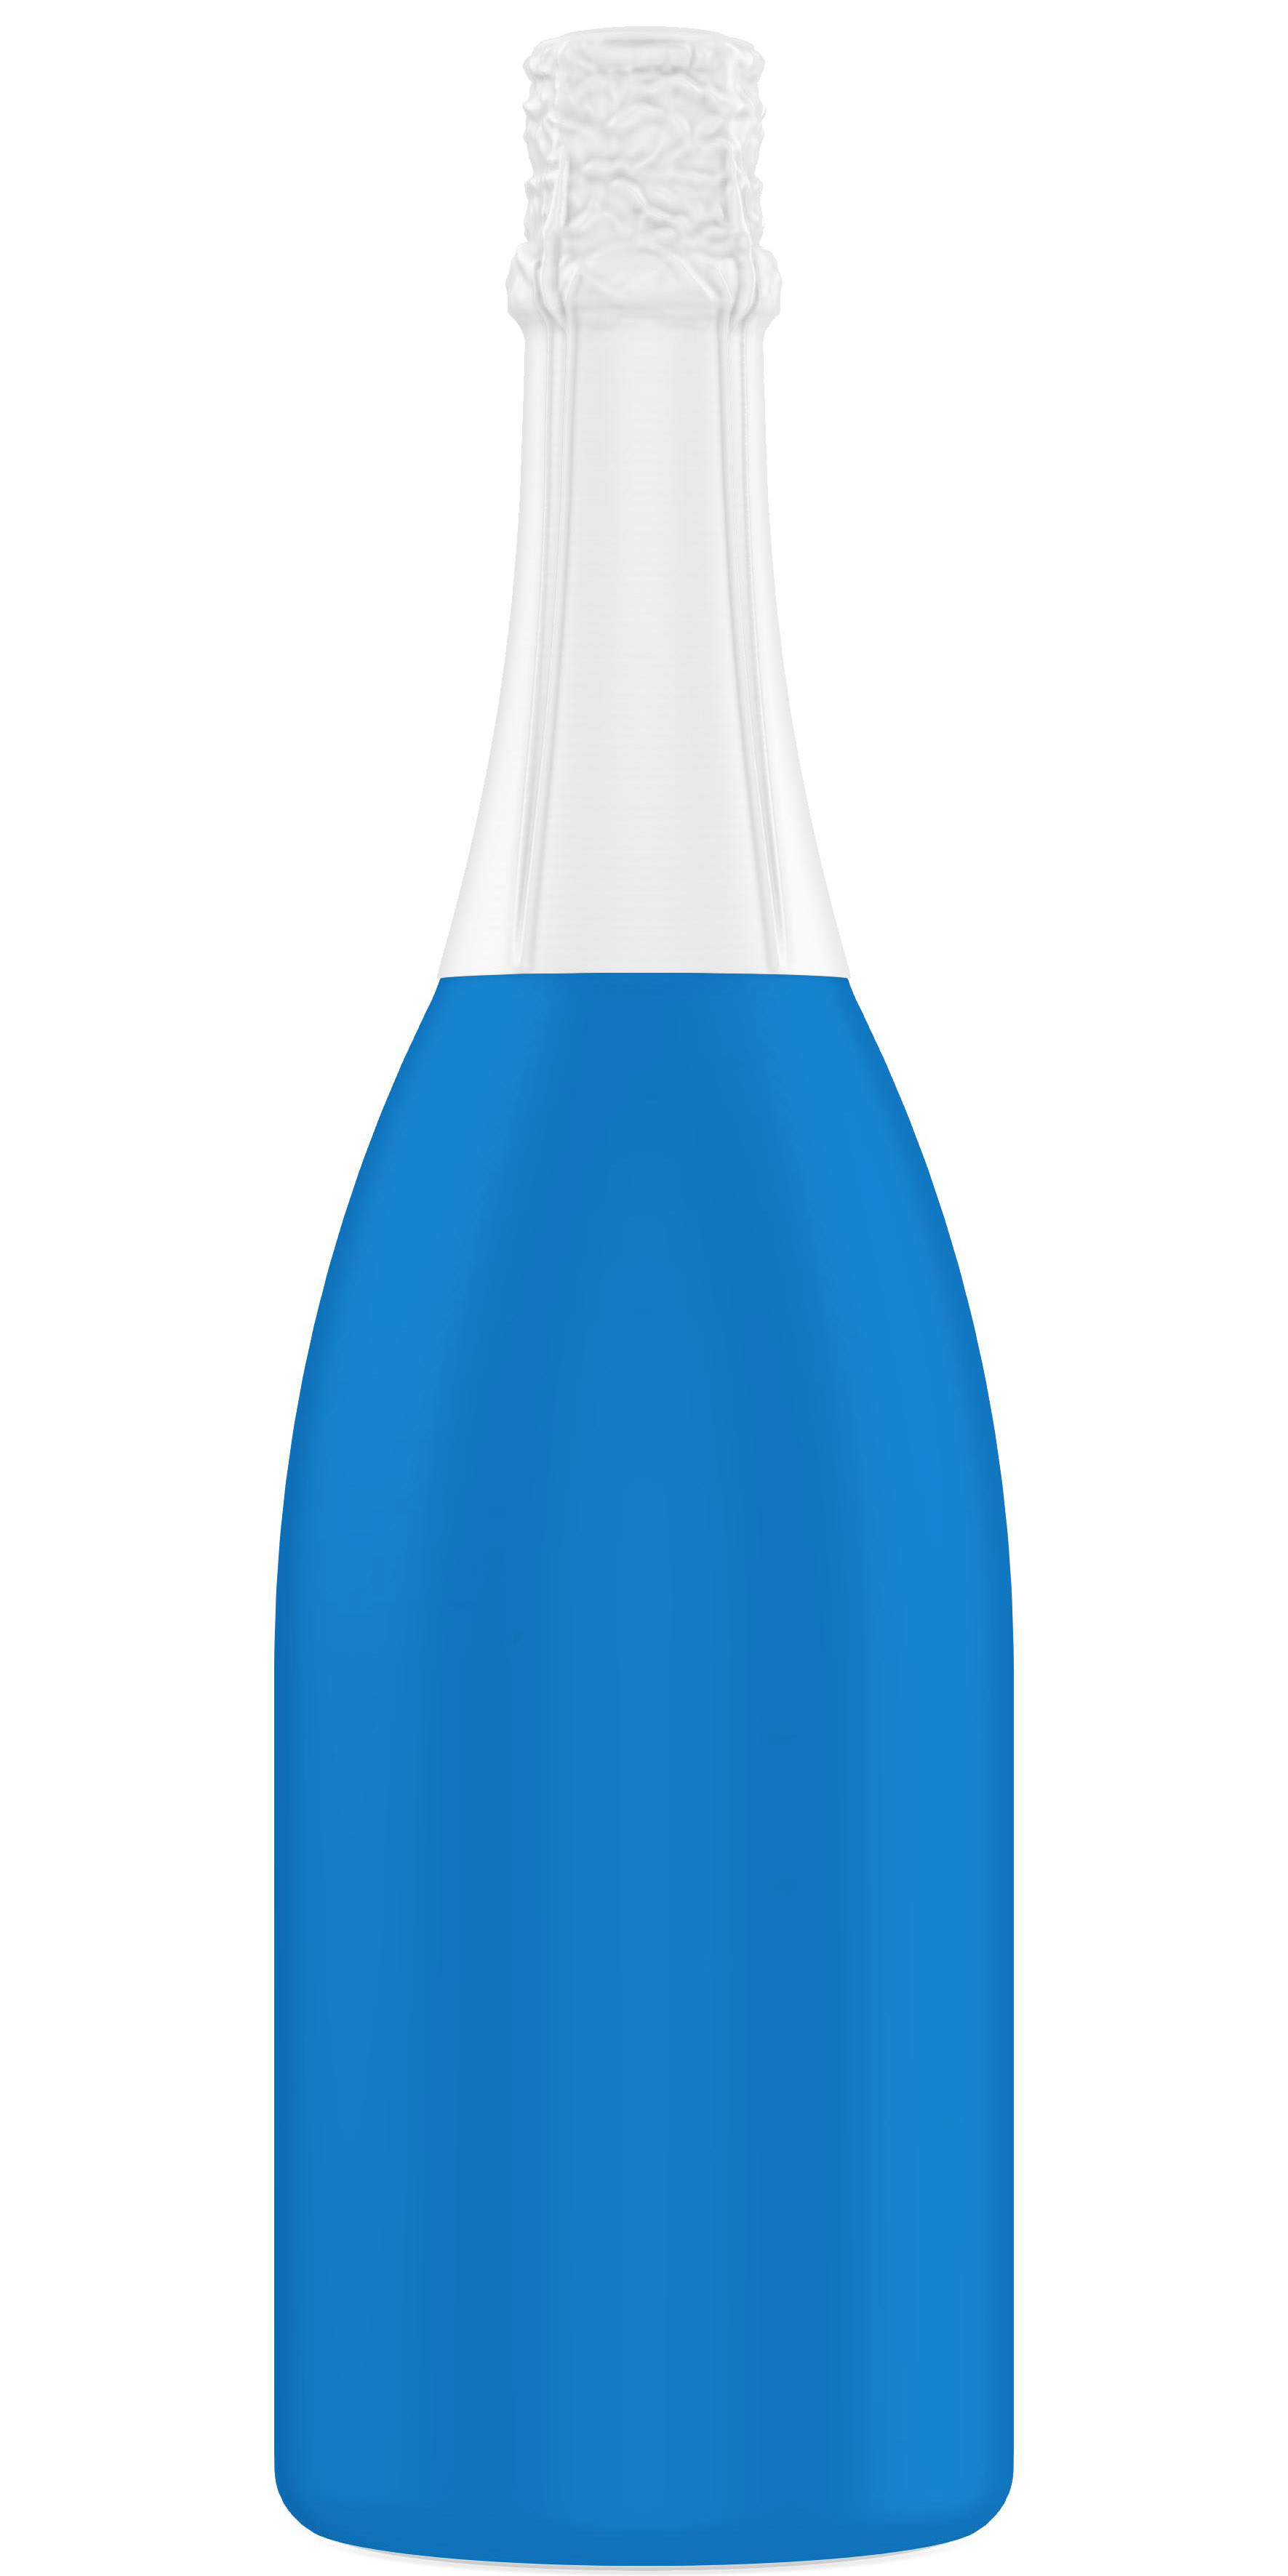 Forma de empaque de champagne magnum